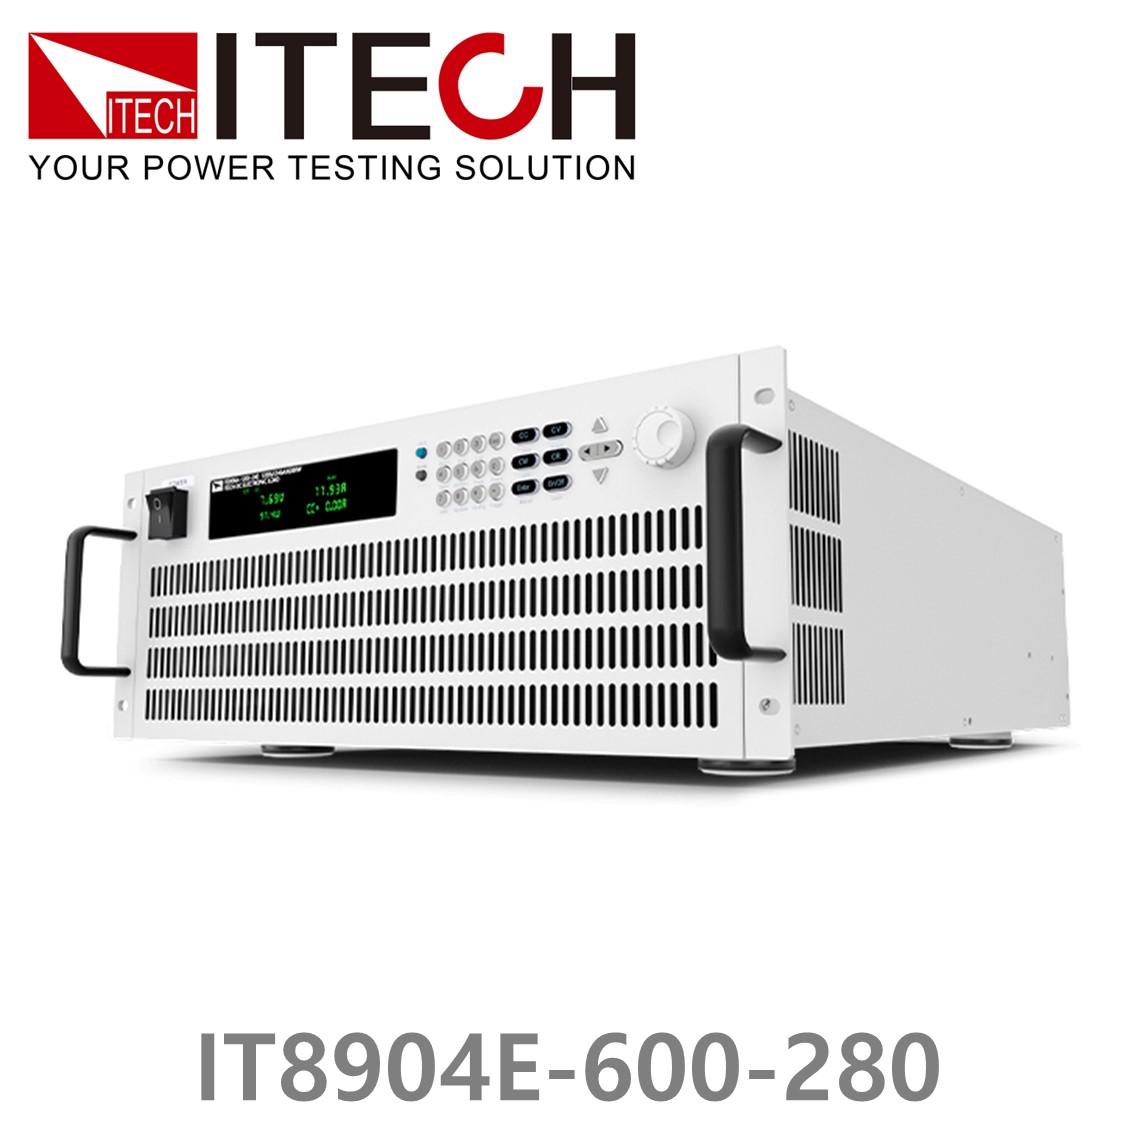 [ ITECH ] IT8904E-600-280  고성능 고전력 DC 전자로드 600V/280A/4kW (4U)